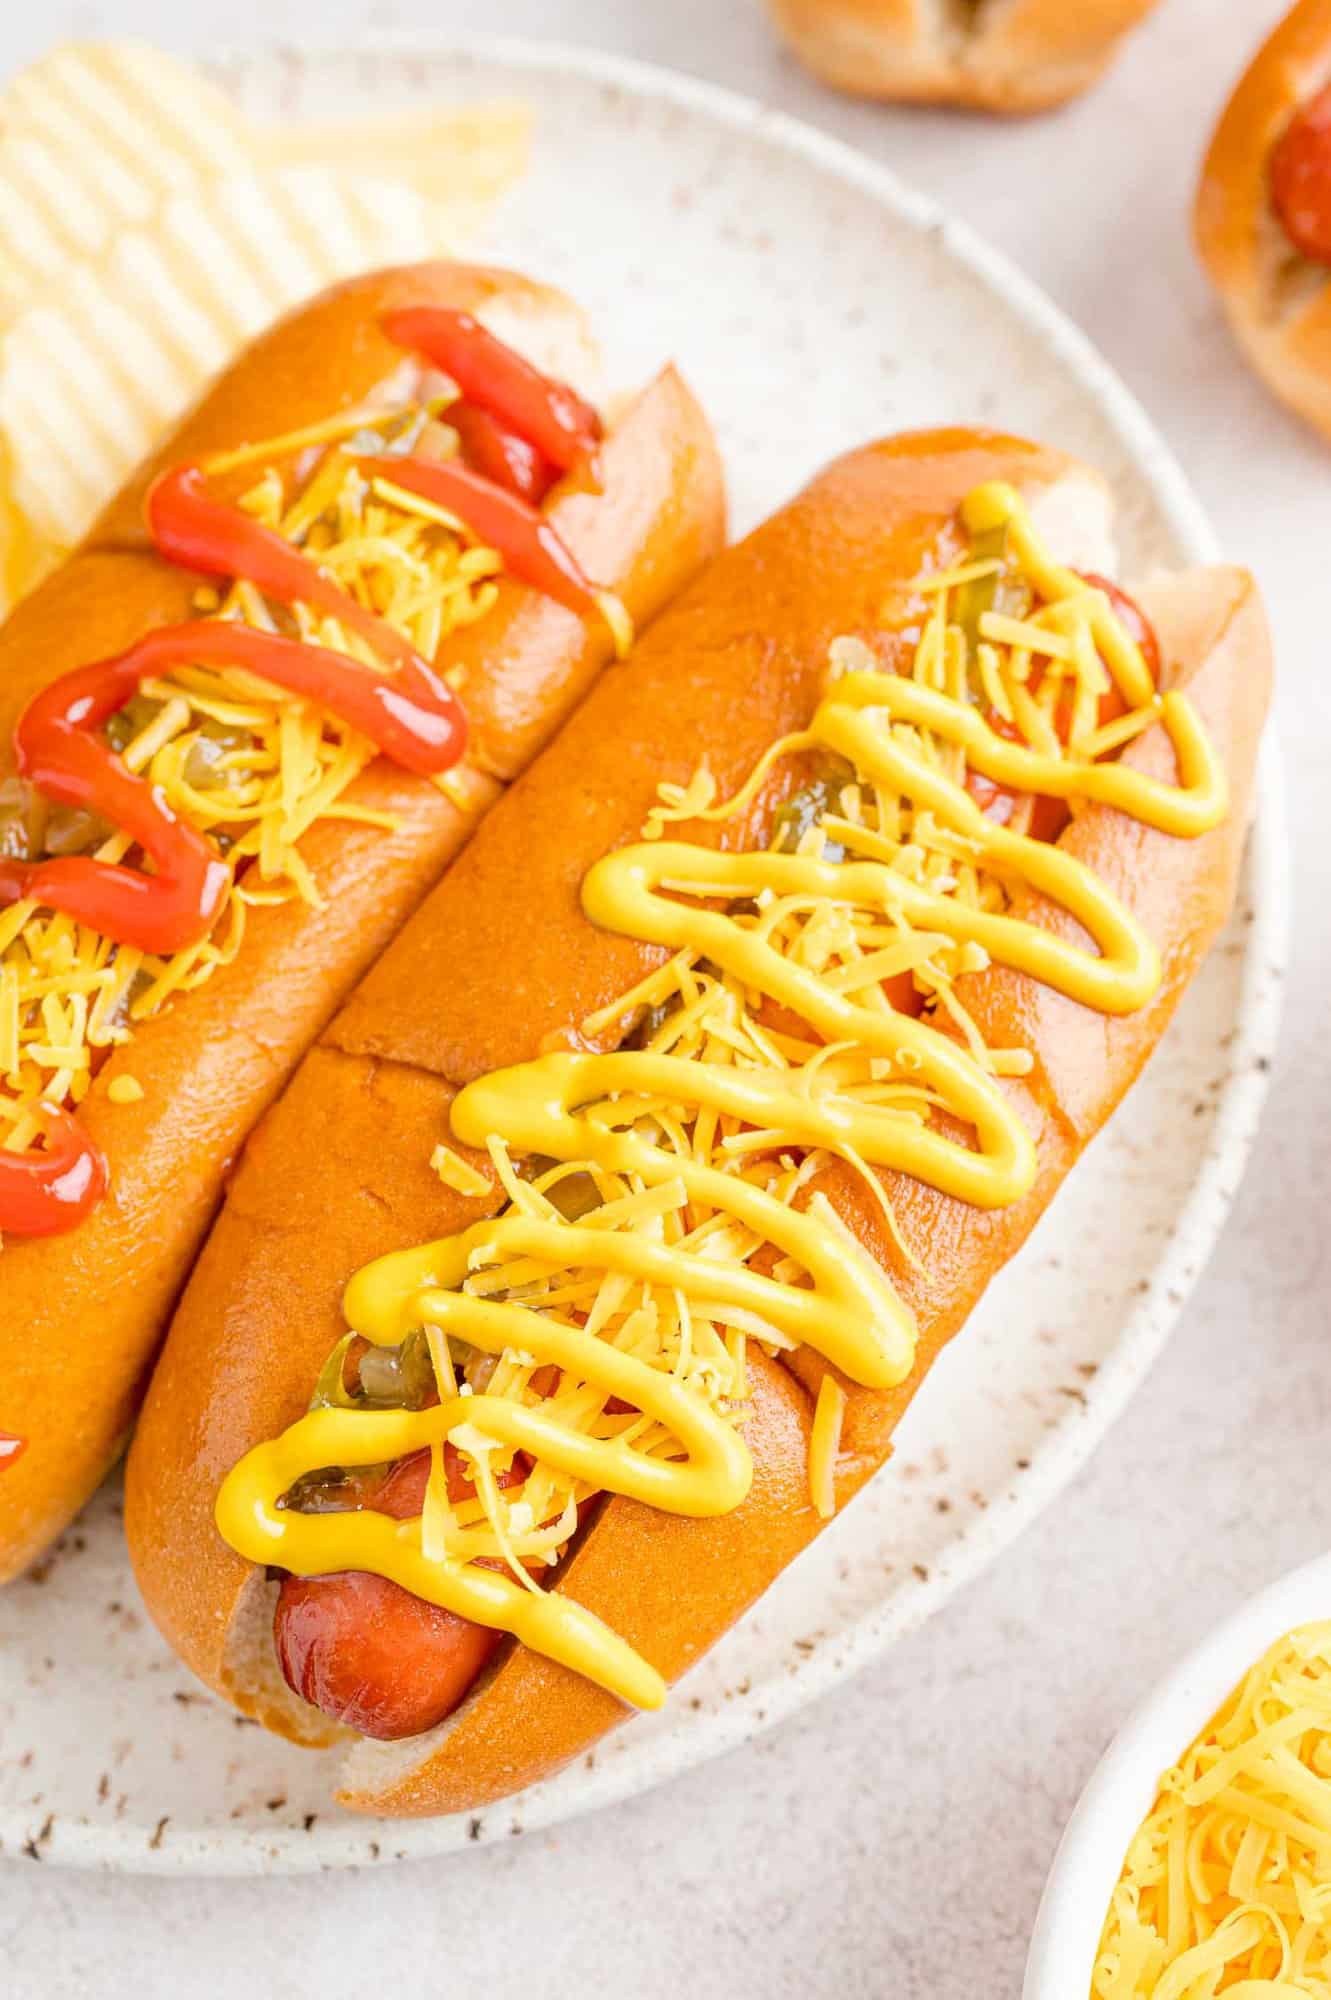 Hot-dogs en petits pains avec garnitures.